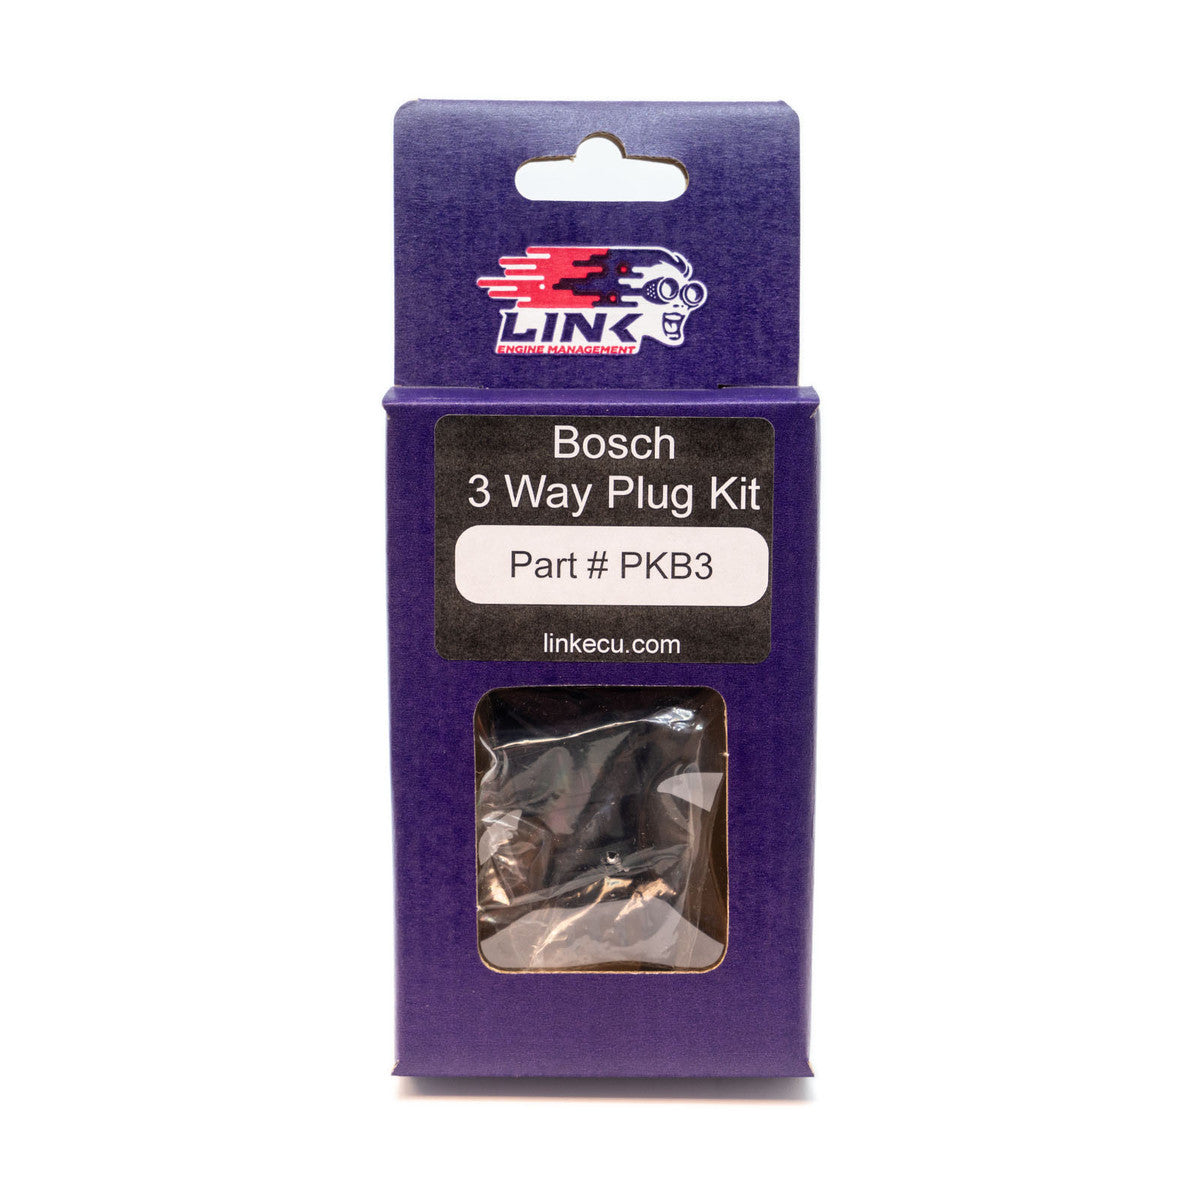 Bosch 3 Way Plug Kit - #PKB3